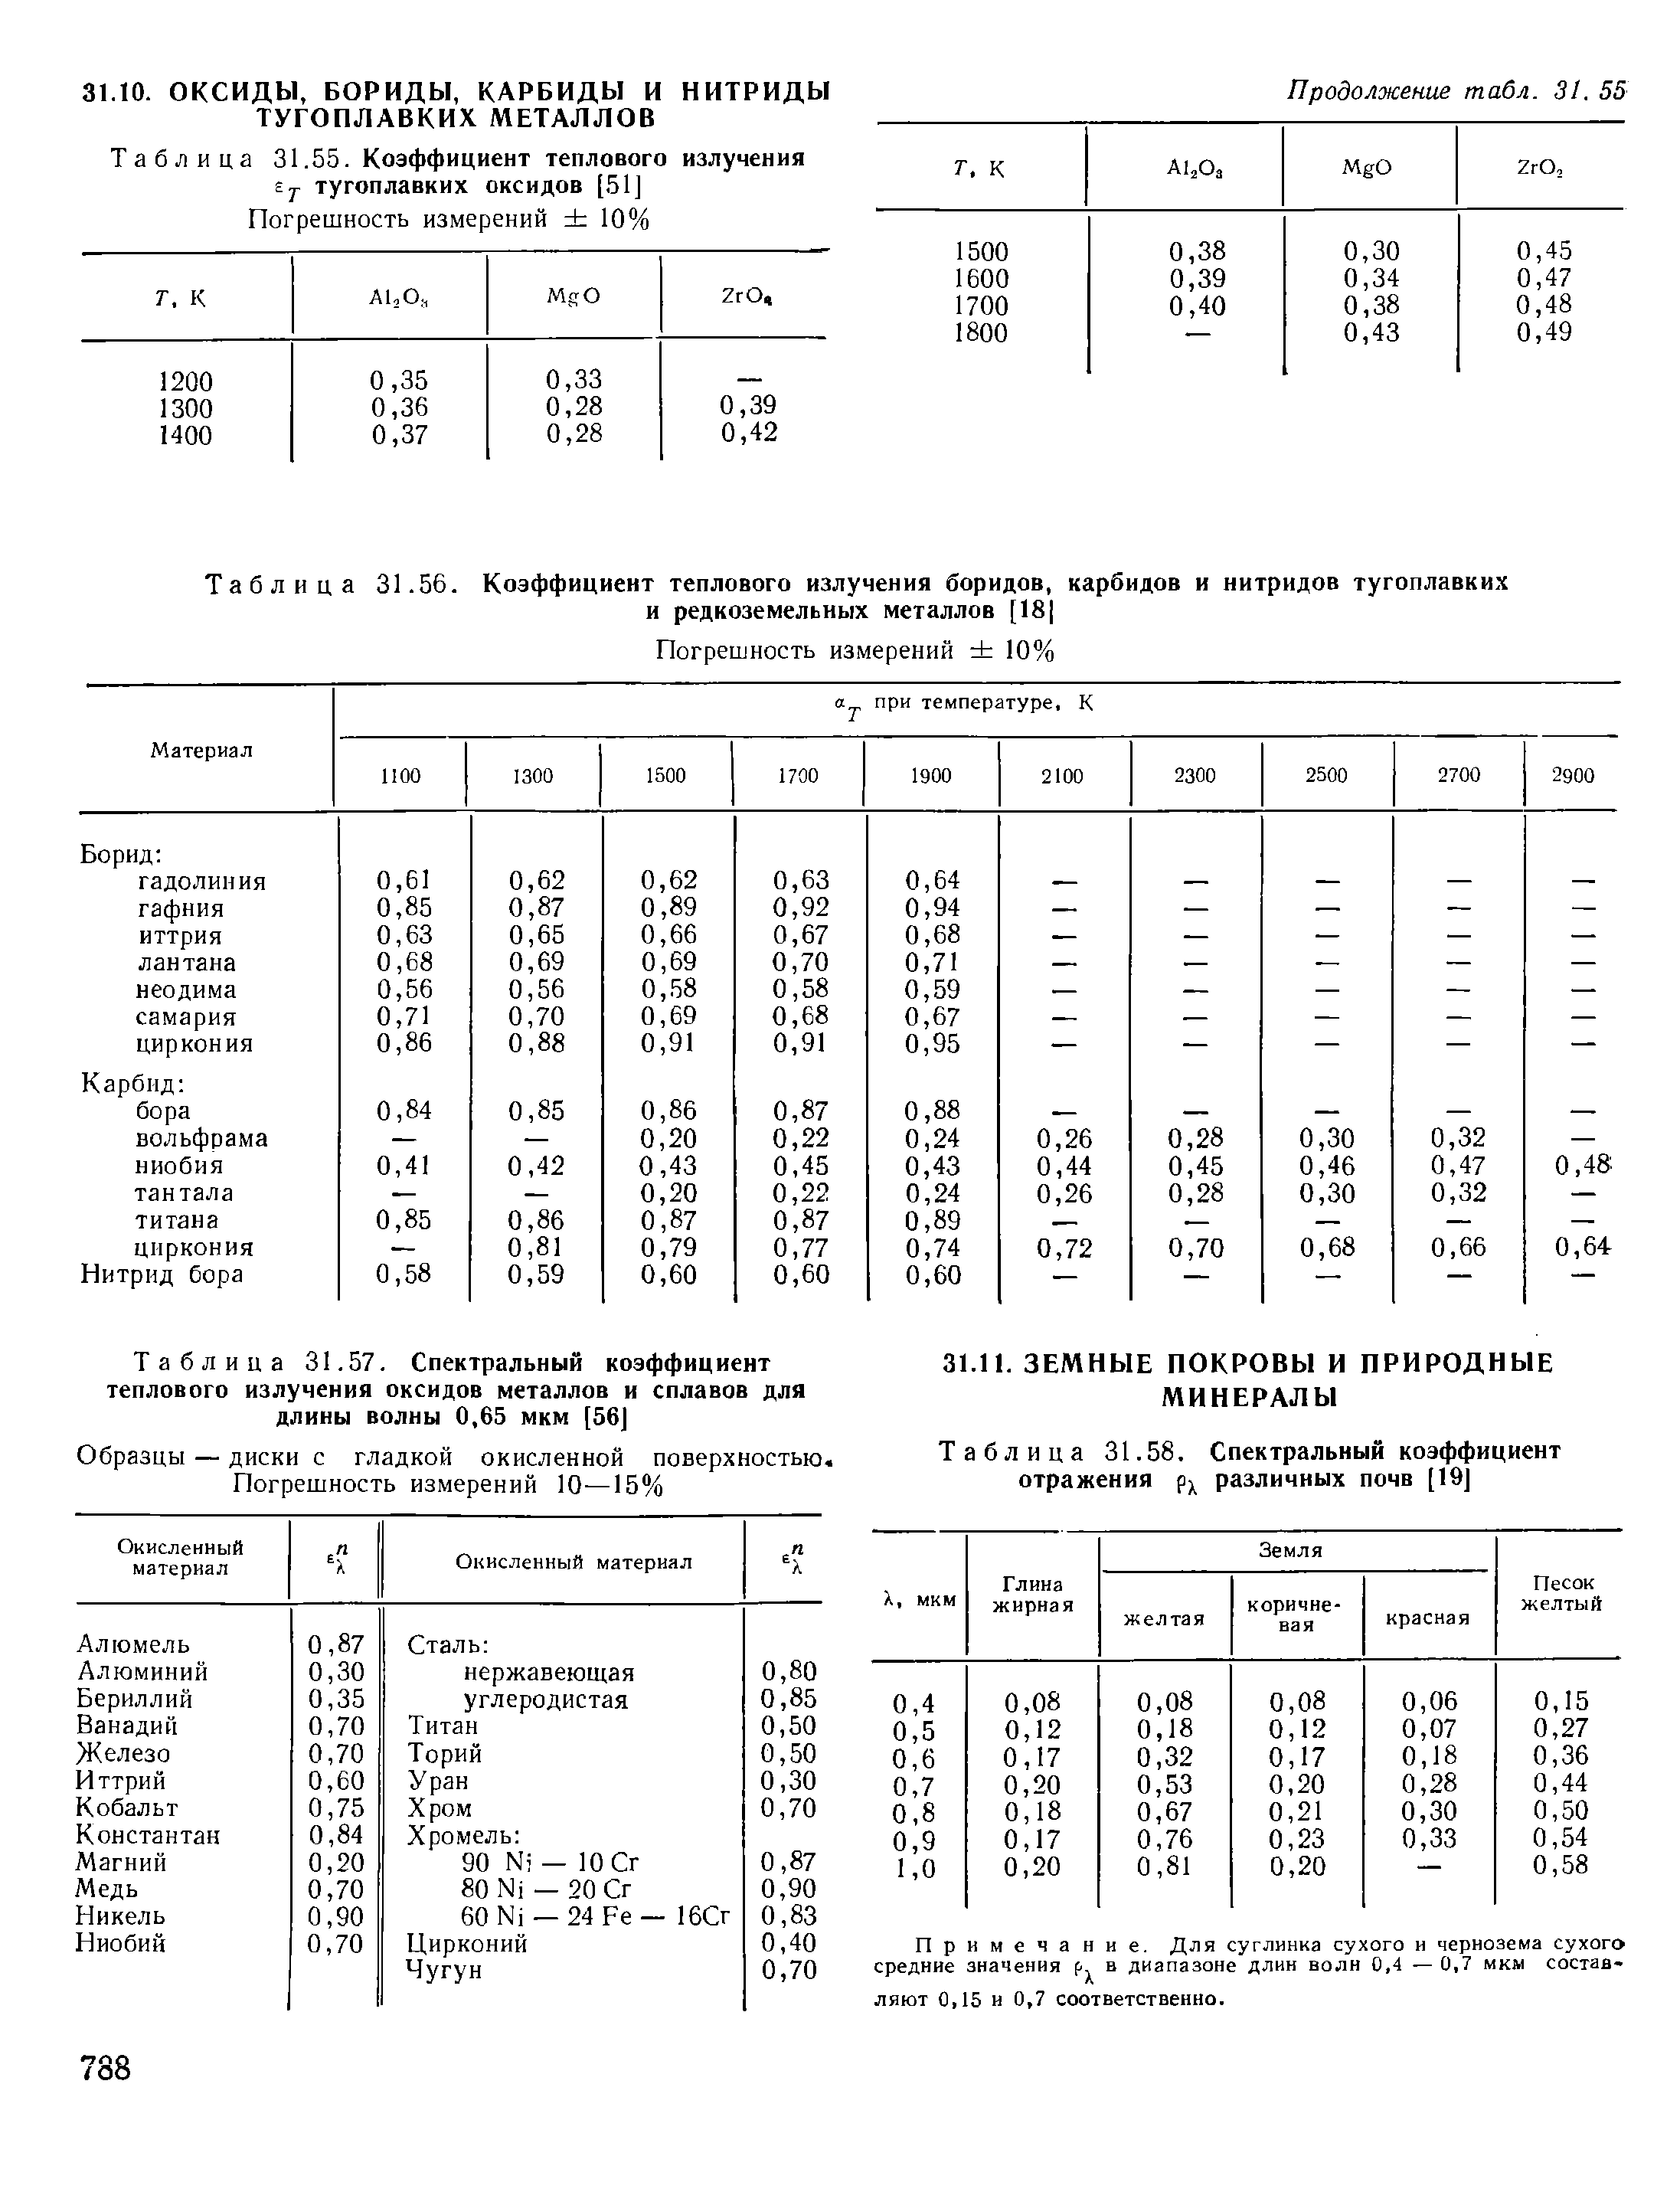 Таблица 31.58. Спектральный коэффициент отражения pj различных почв [19]
